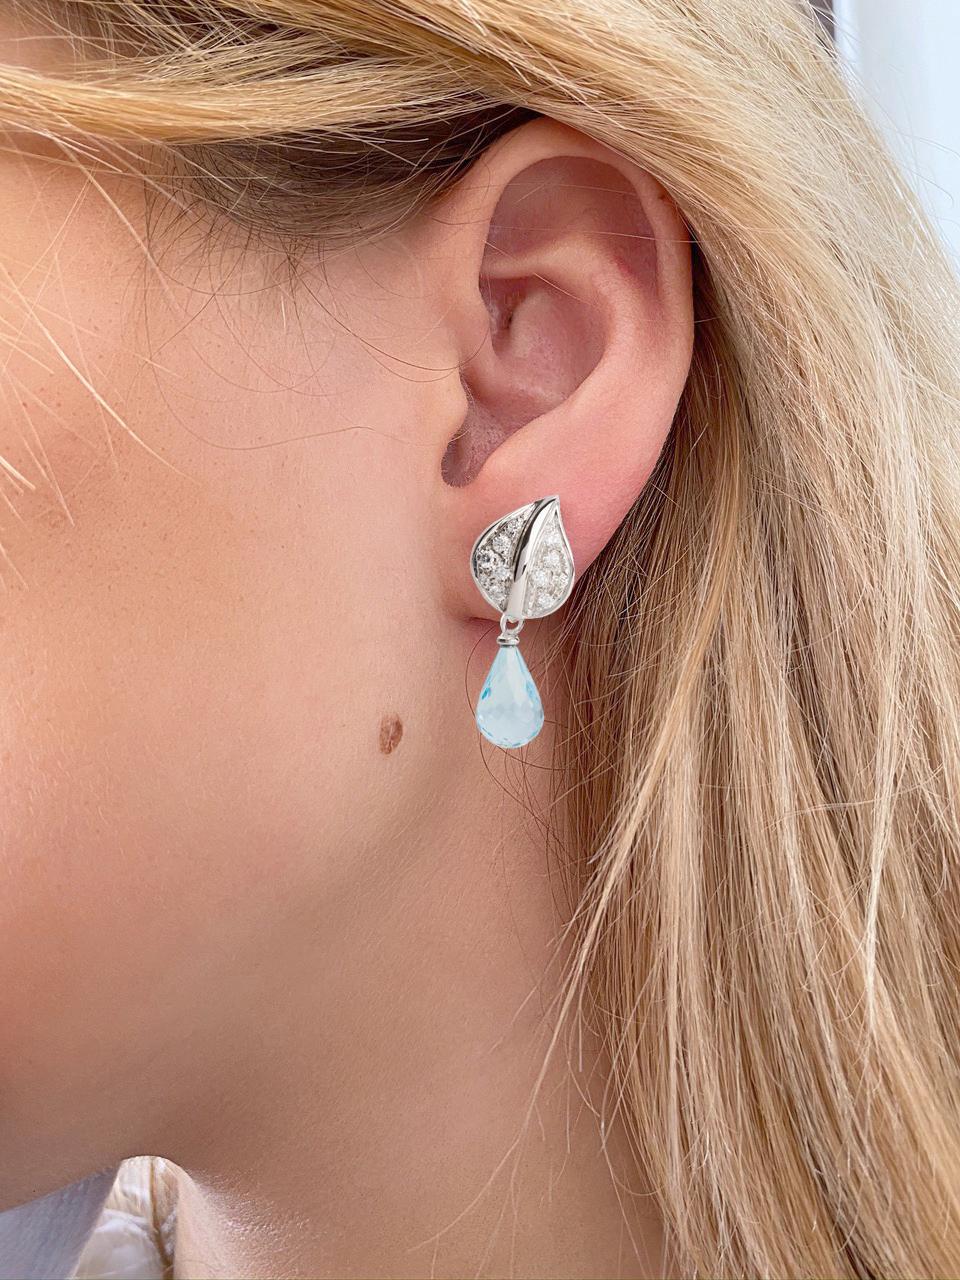 Rossella Ugolini Design Collection präsentiert  moderne Ohrringe, die mit oder ohne Anhänger getragen werden können.
Sie bestehen aus einem mit 0,30 weißen Diamanten besetzten Blatt, das auf dem Lappen ruht, und einem 4 Karat Aquamarin im